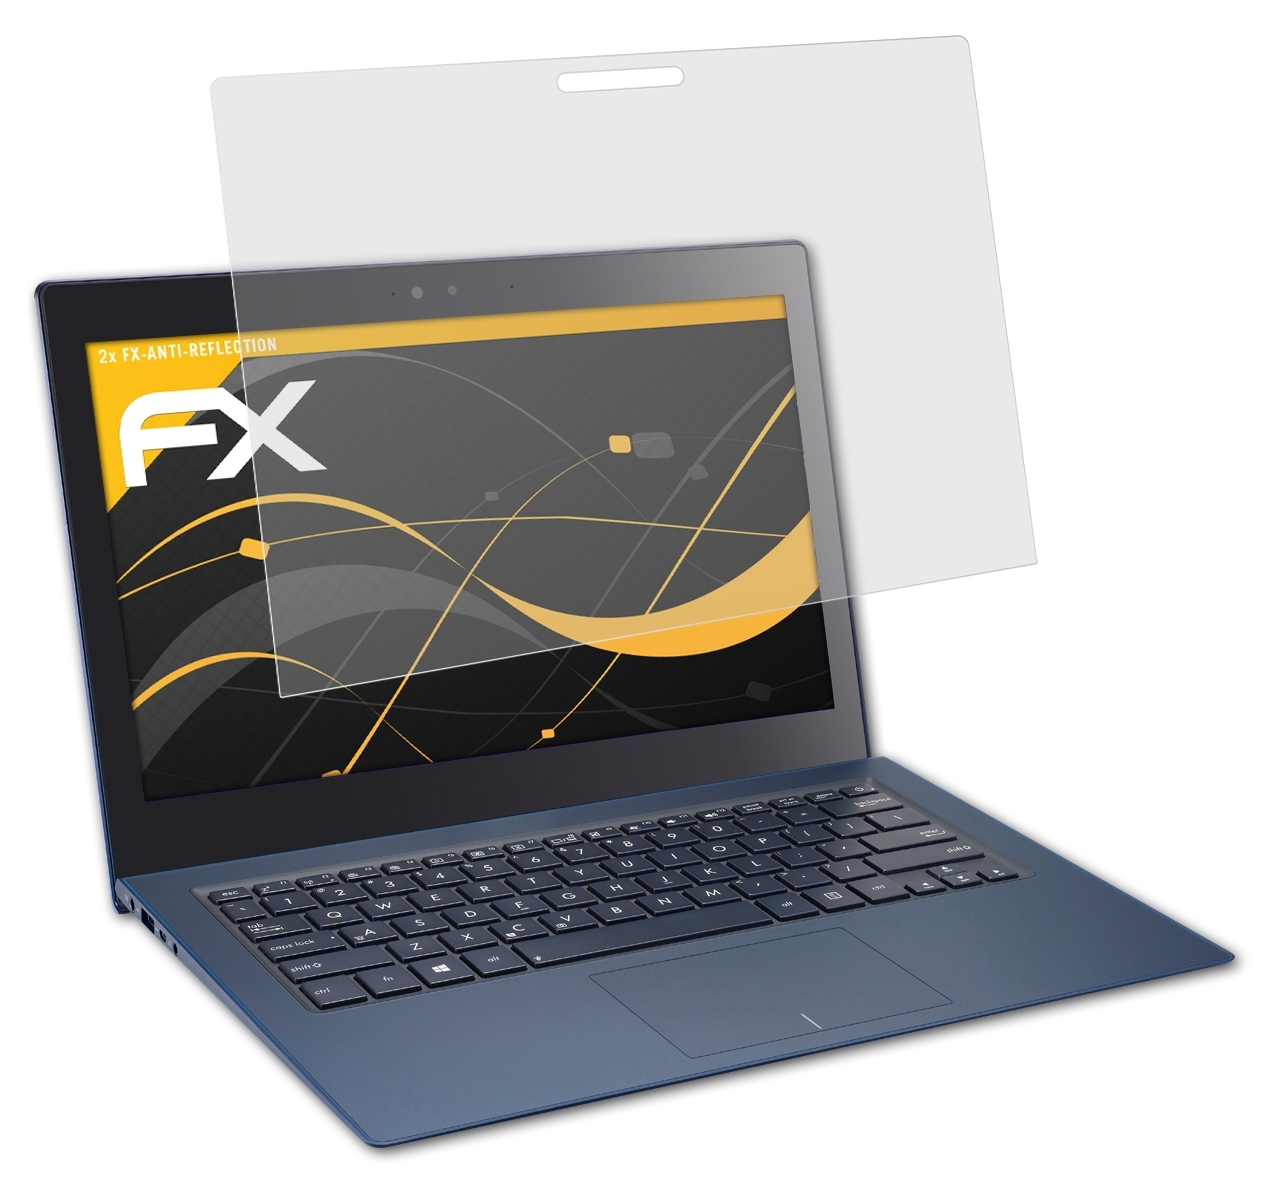 2x UX301 FX-Antireflex ATFOLIX Displayschutz(für Asus Zenbook / UX302)